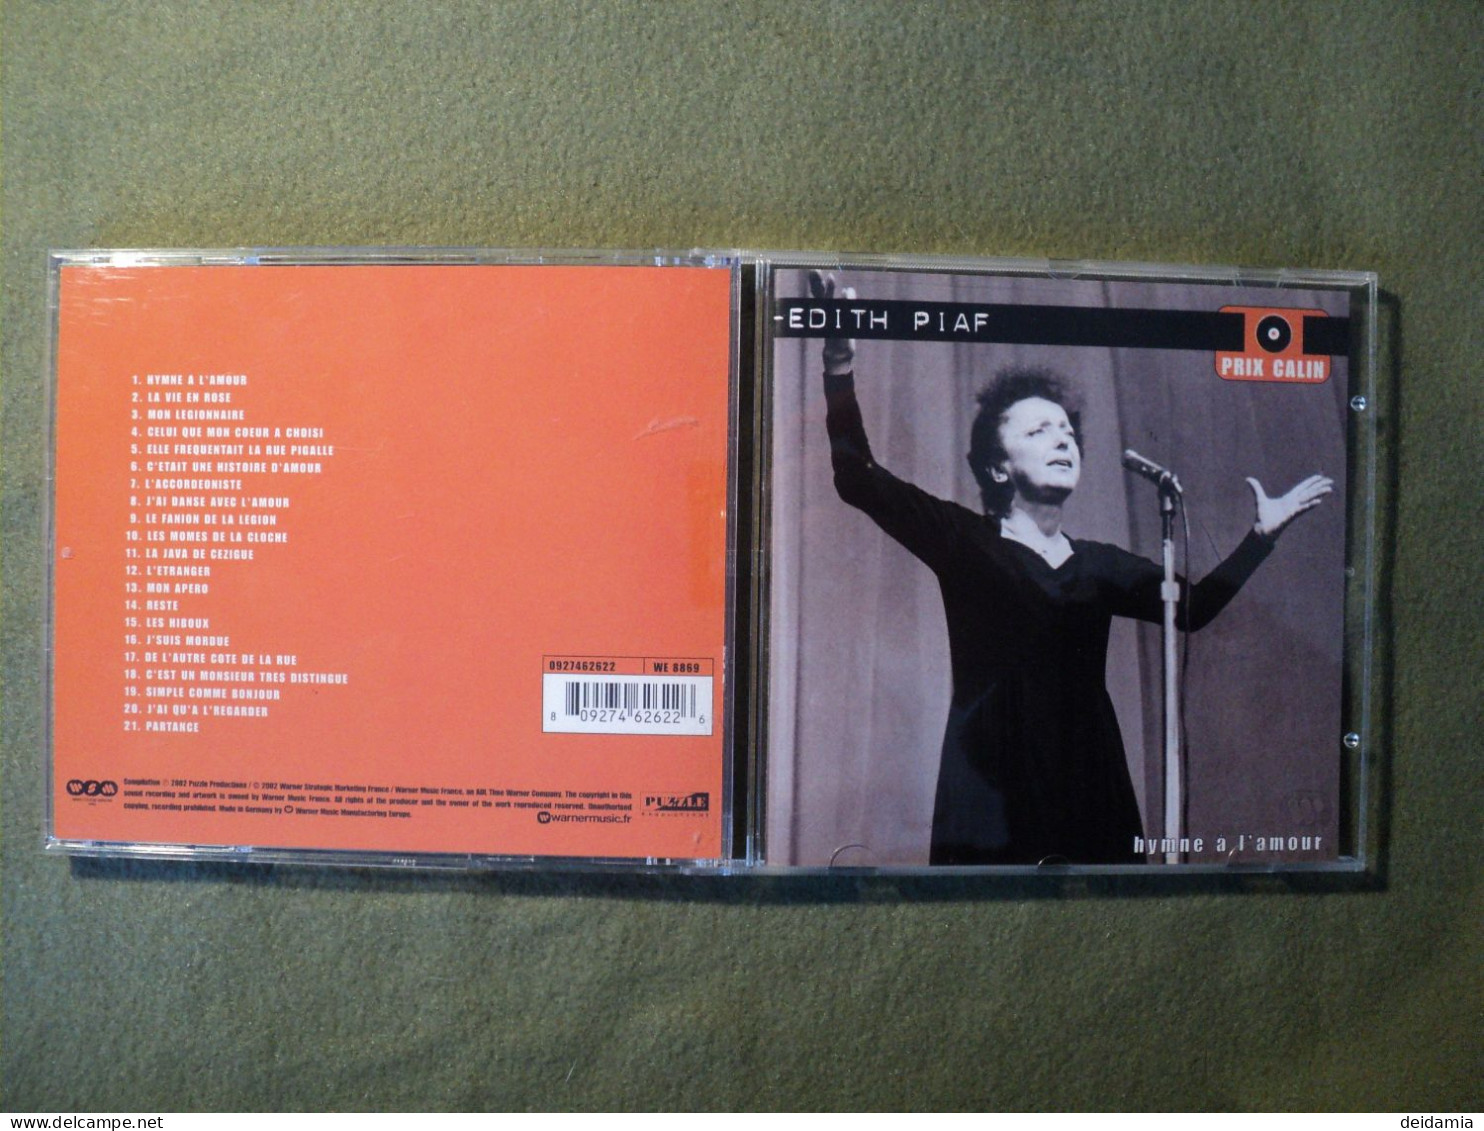 EDITH PIAF. CD 21 TITRES DE 2002. HYMNE A L AMOUR. WARNER 0927462622 HYMNE A L AMOUR / LA VIE EN ROSE / MON LEGIONNAIRE - Other - French Music